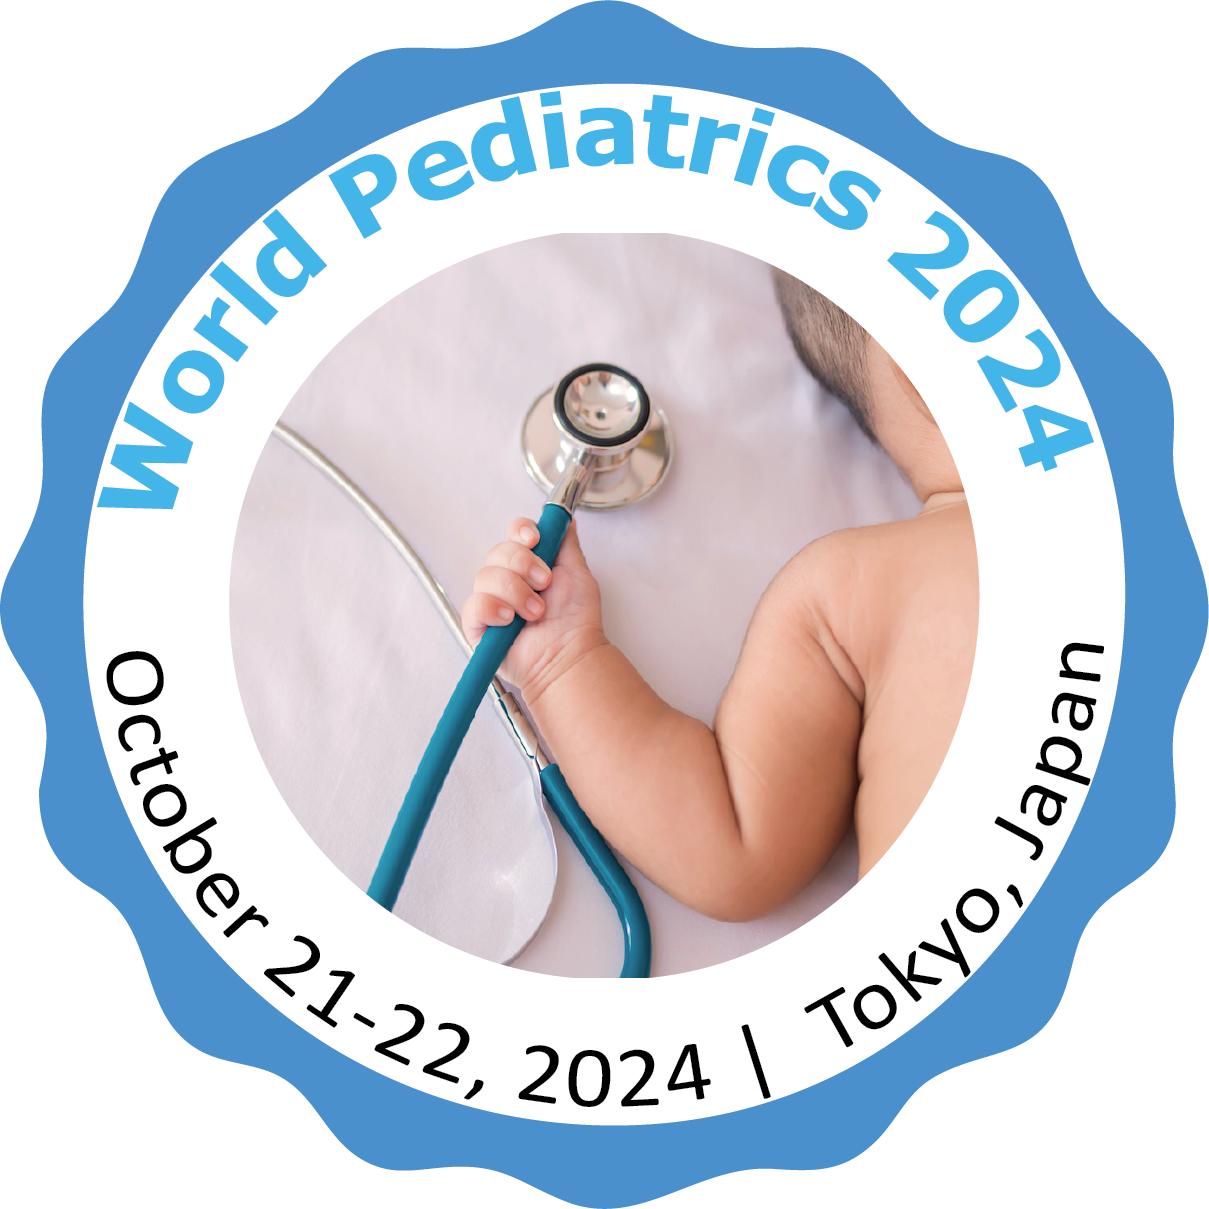 8th World Pediatrics Conference